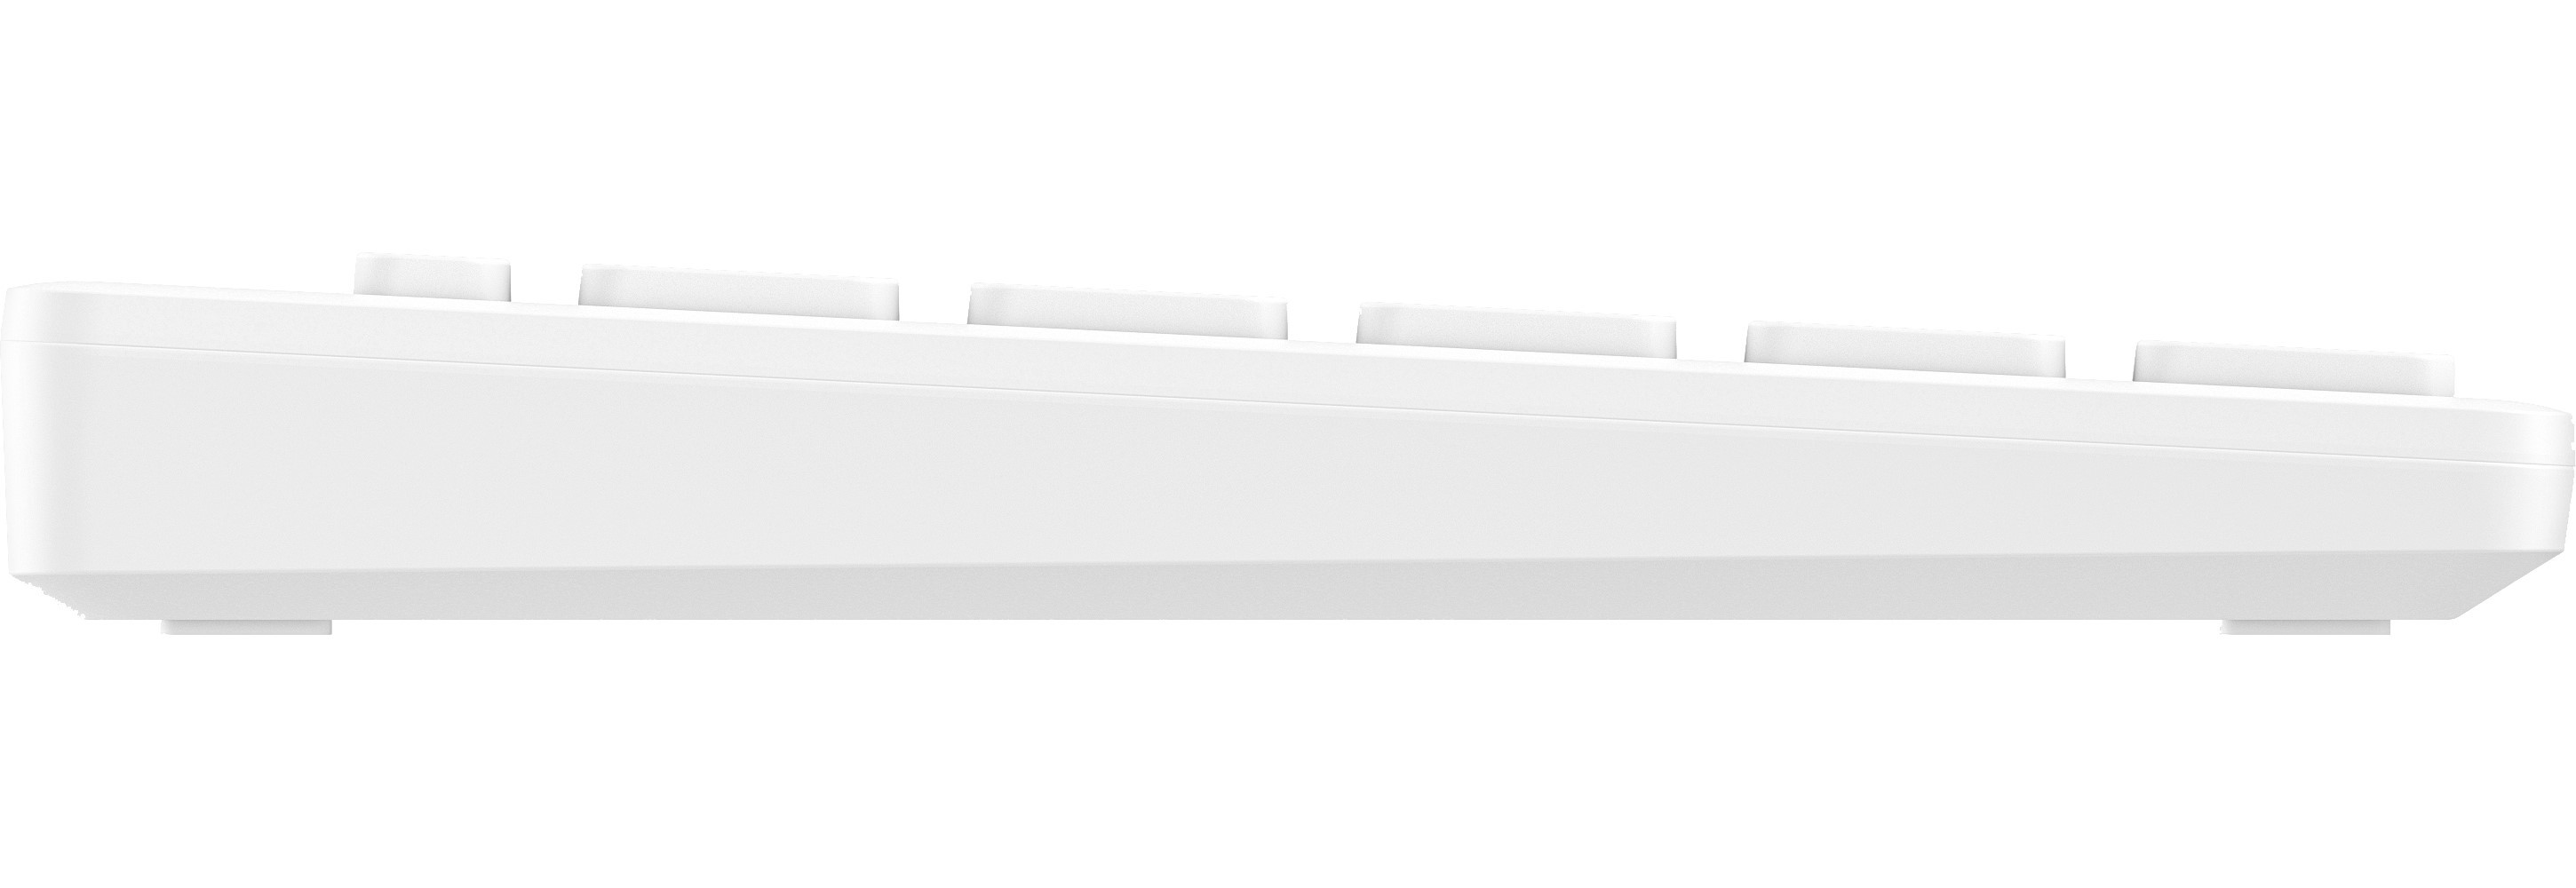 Клавиатура HP 350 Multi-Device Compact Wireless Keyboard White (692T0AA) Казахстан